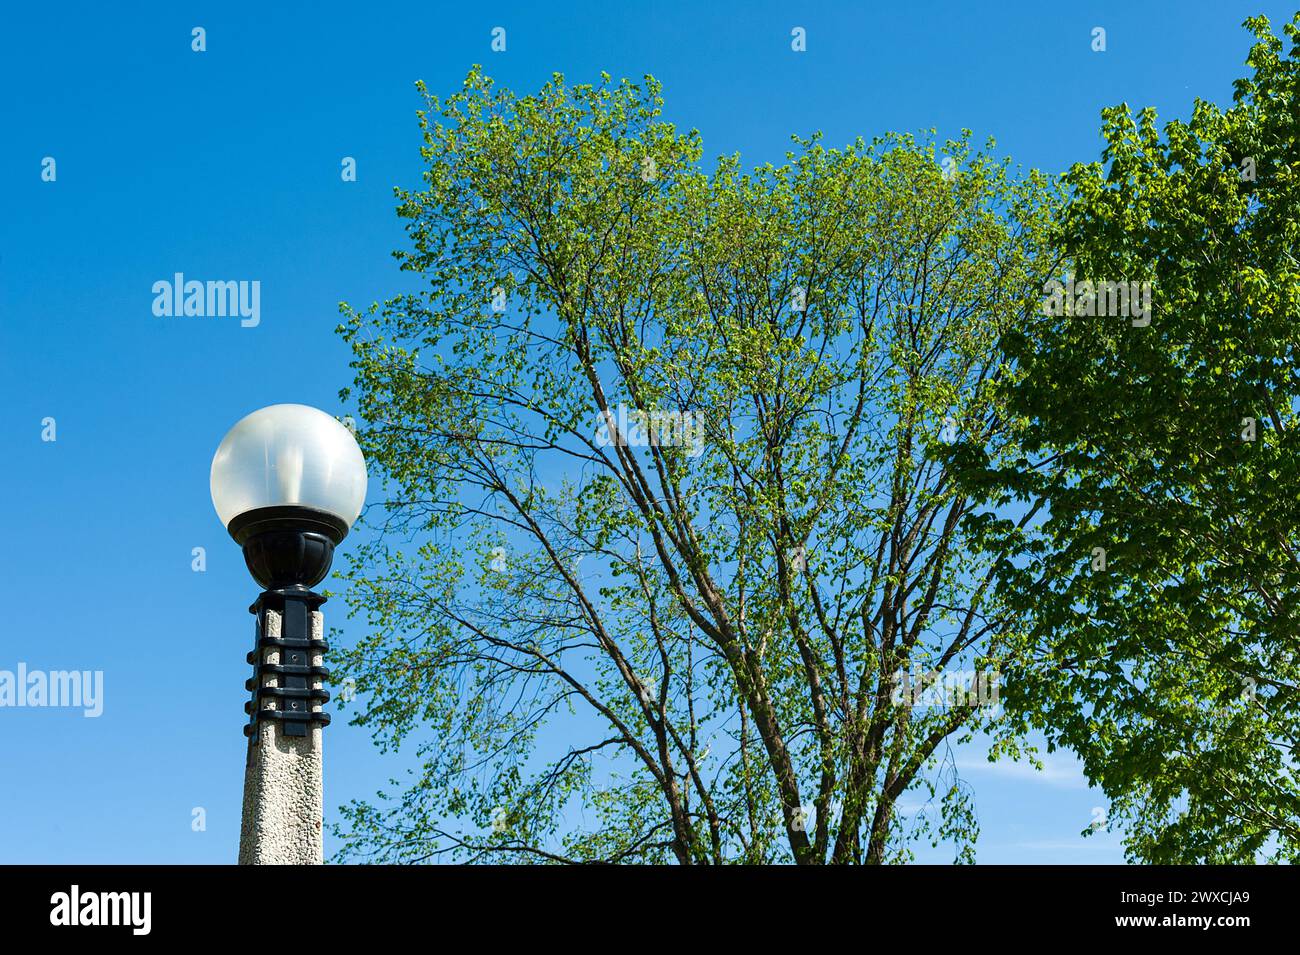 Le lampadaire globe et le grand érable contrastent avec le ciel bleu clair. Banque D'Images